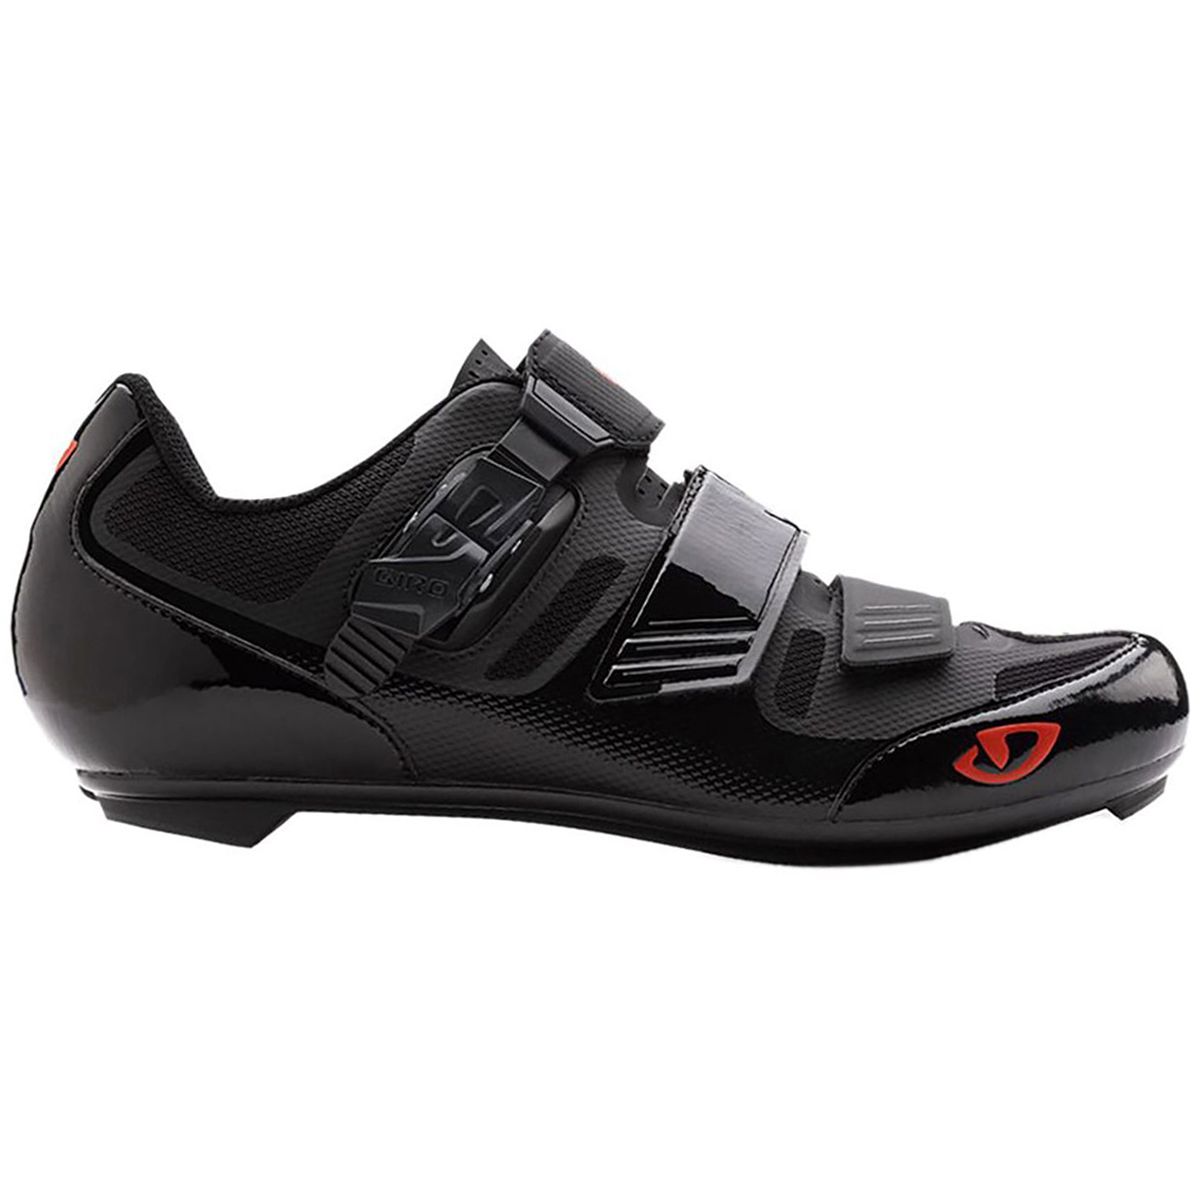 Giro Apeckx II HV Cycling Shoe - Men's